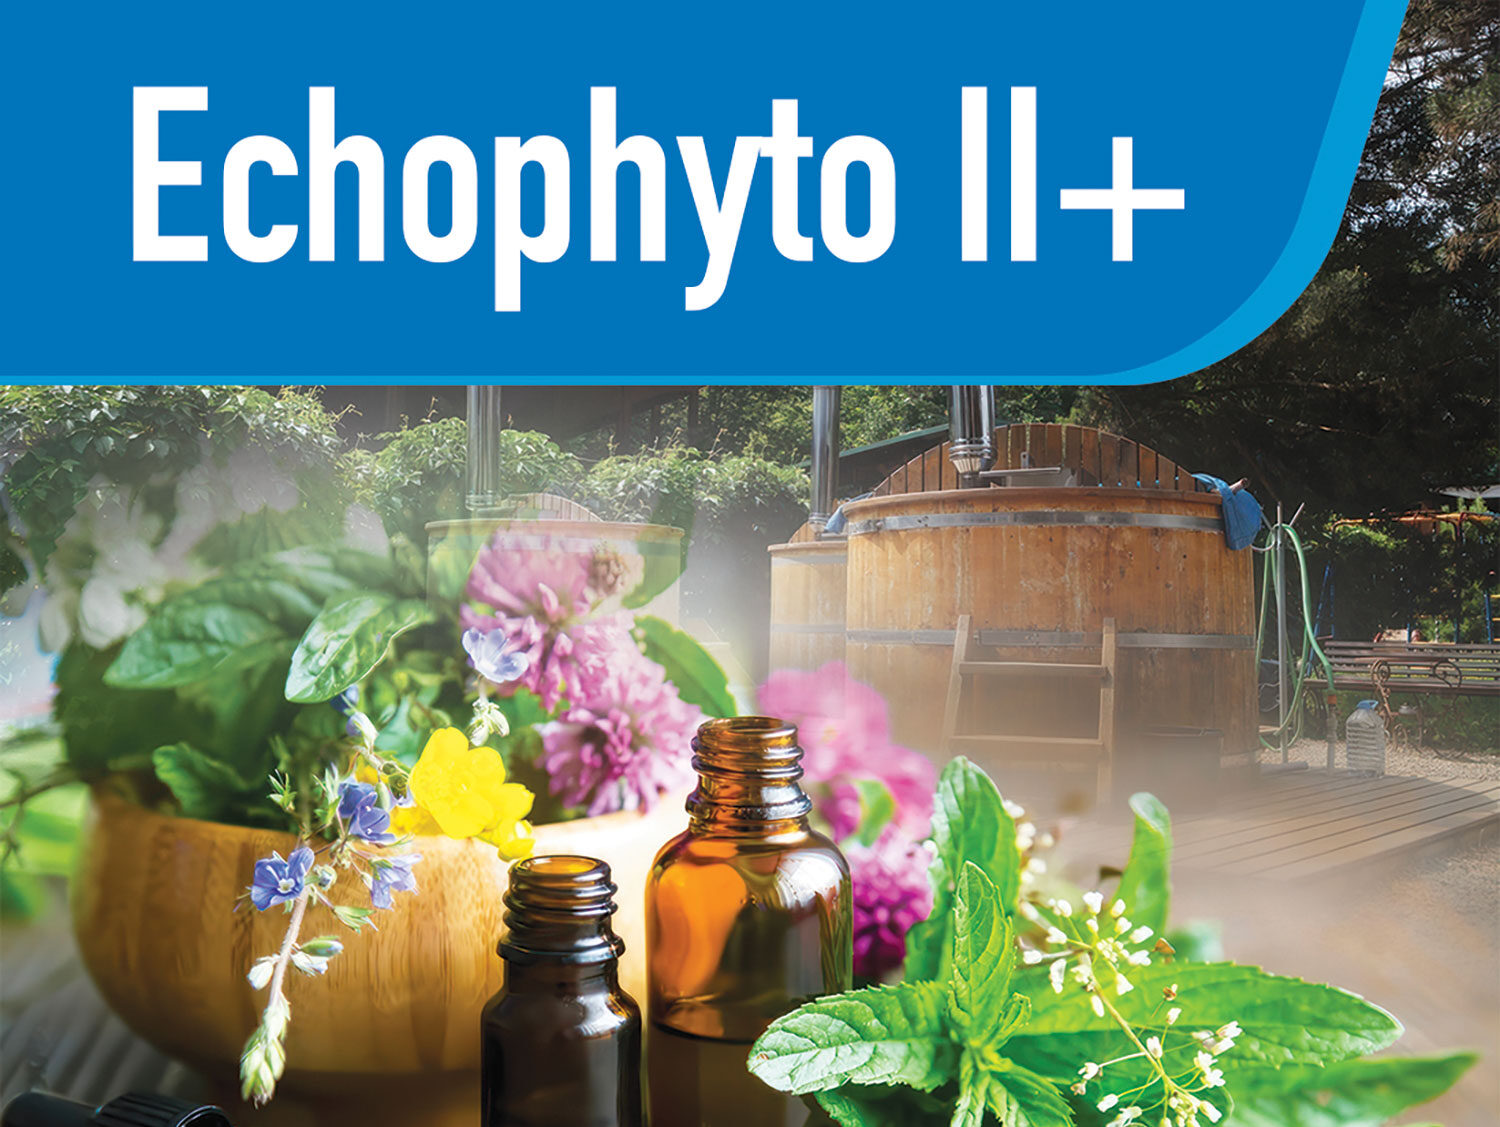 Plan Echophyto II+ : appel à projets pour réduire les pesticides